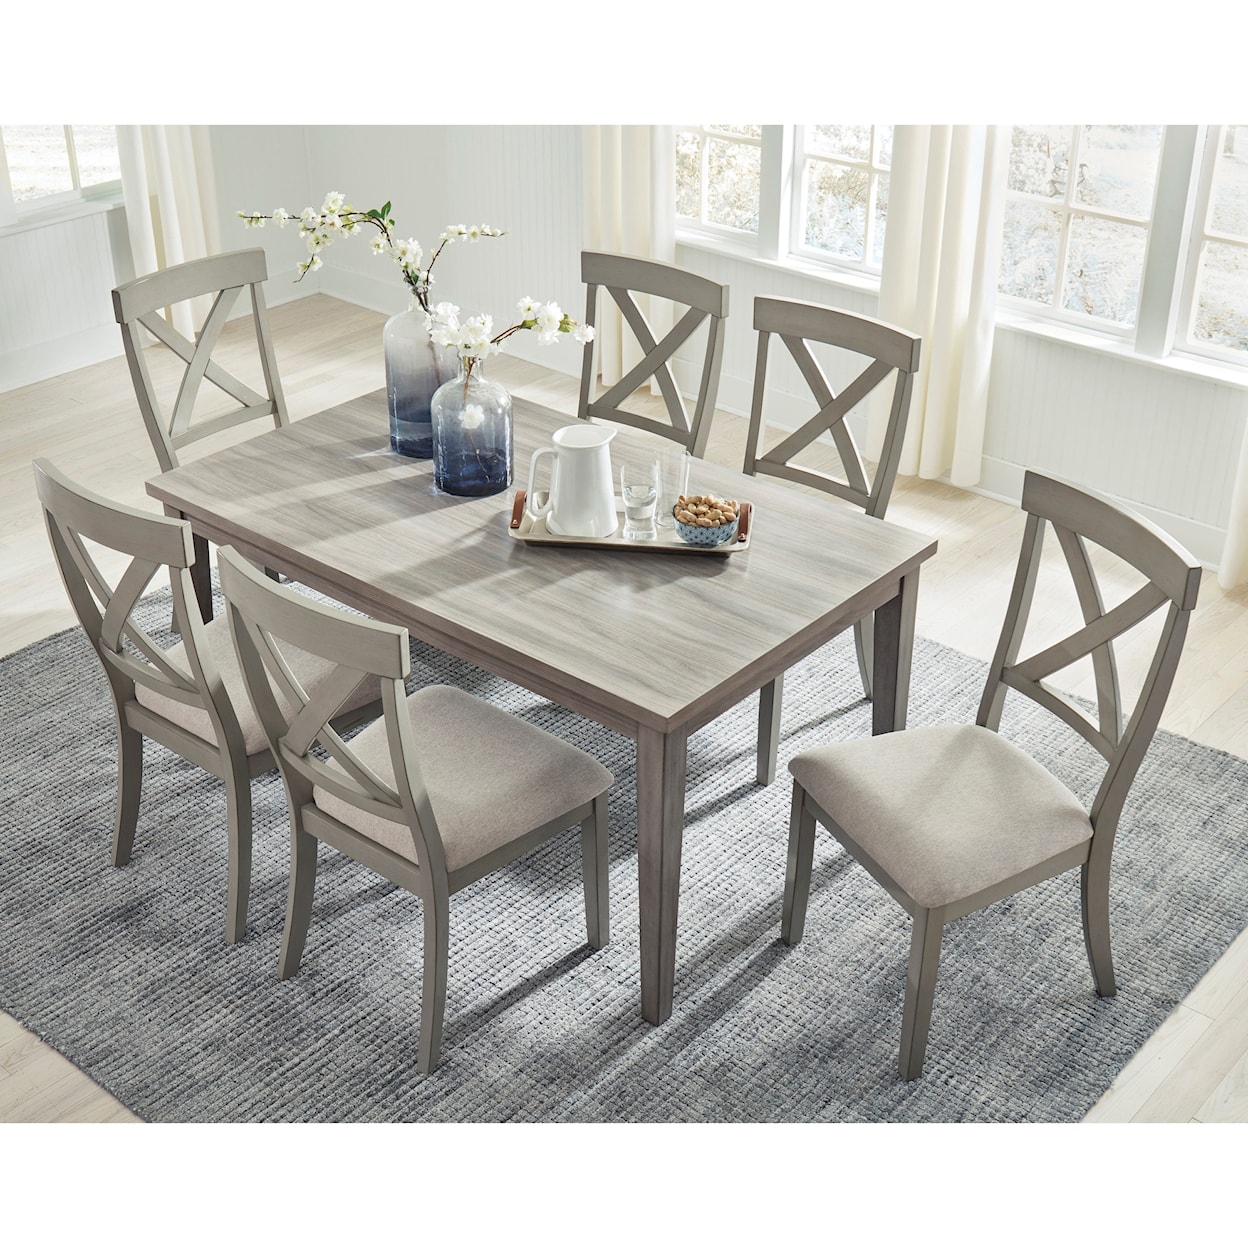 Ashley Furniture Signature Design Parellen Rectangular Dining Room Table